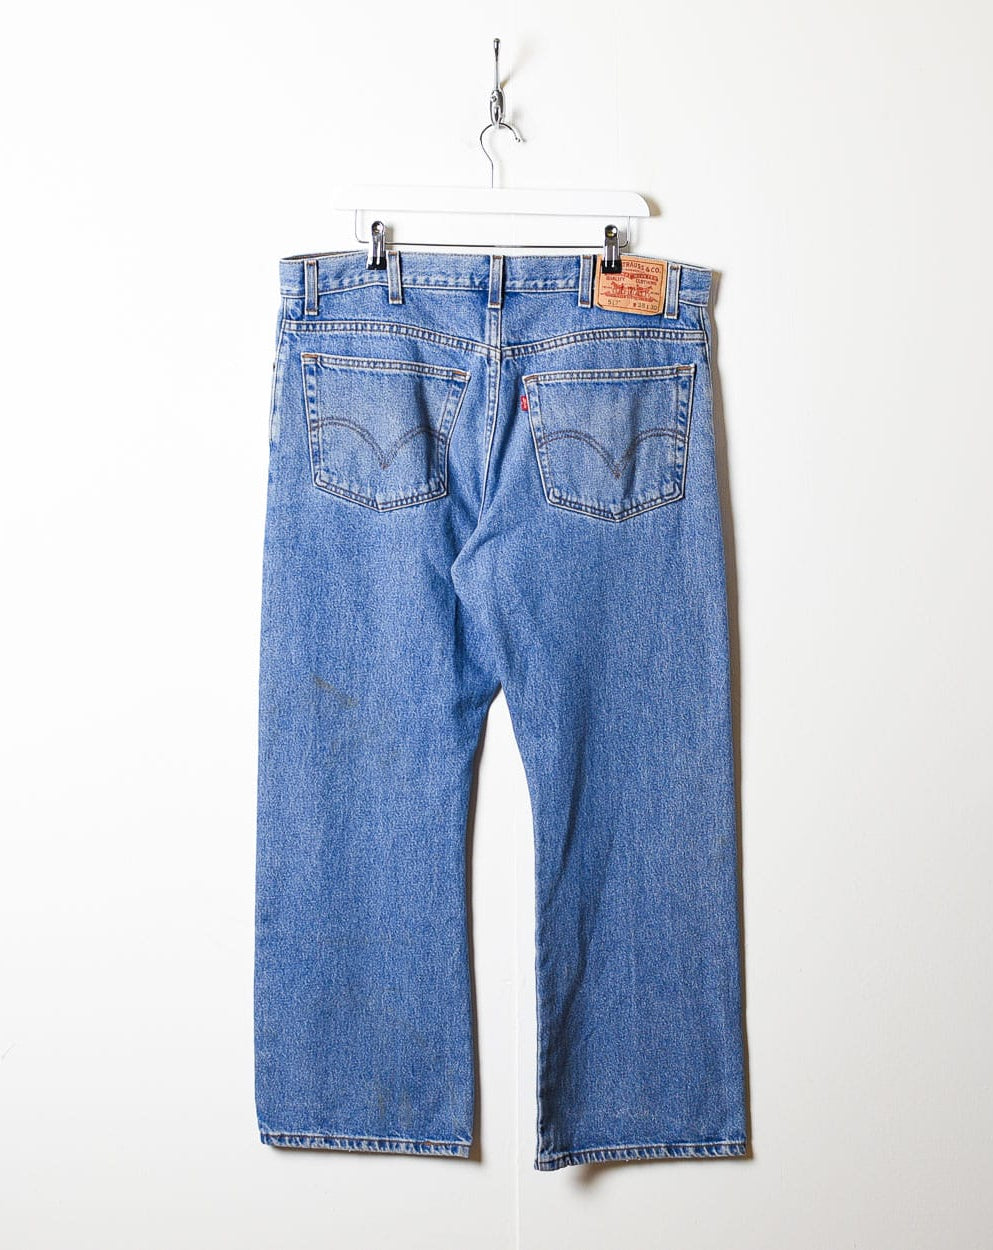 Blue Levi's 517 Jeans - W38 L29